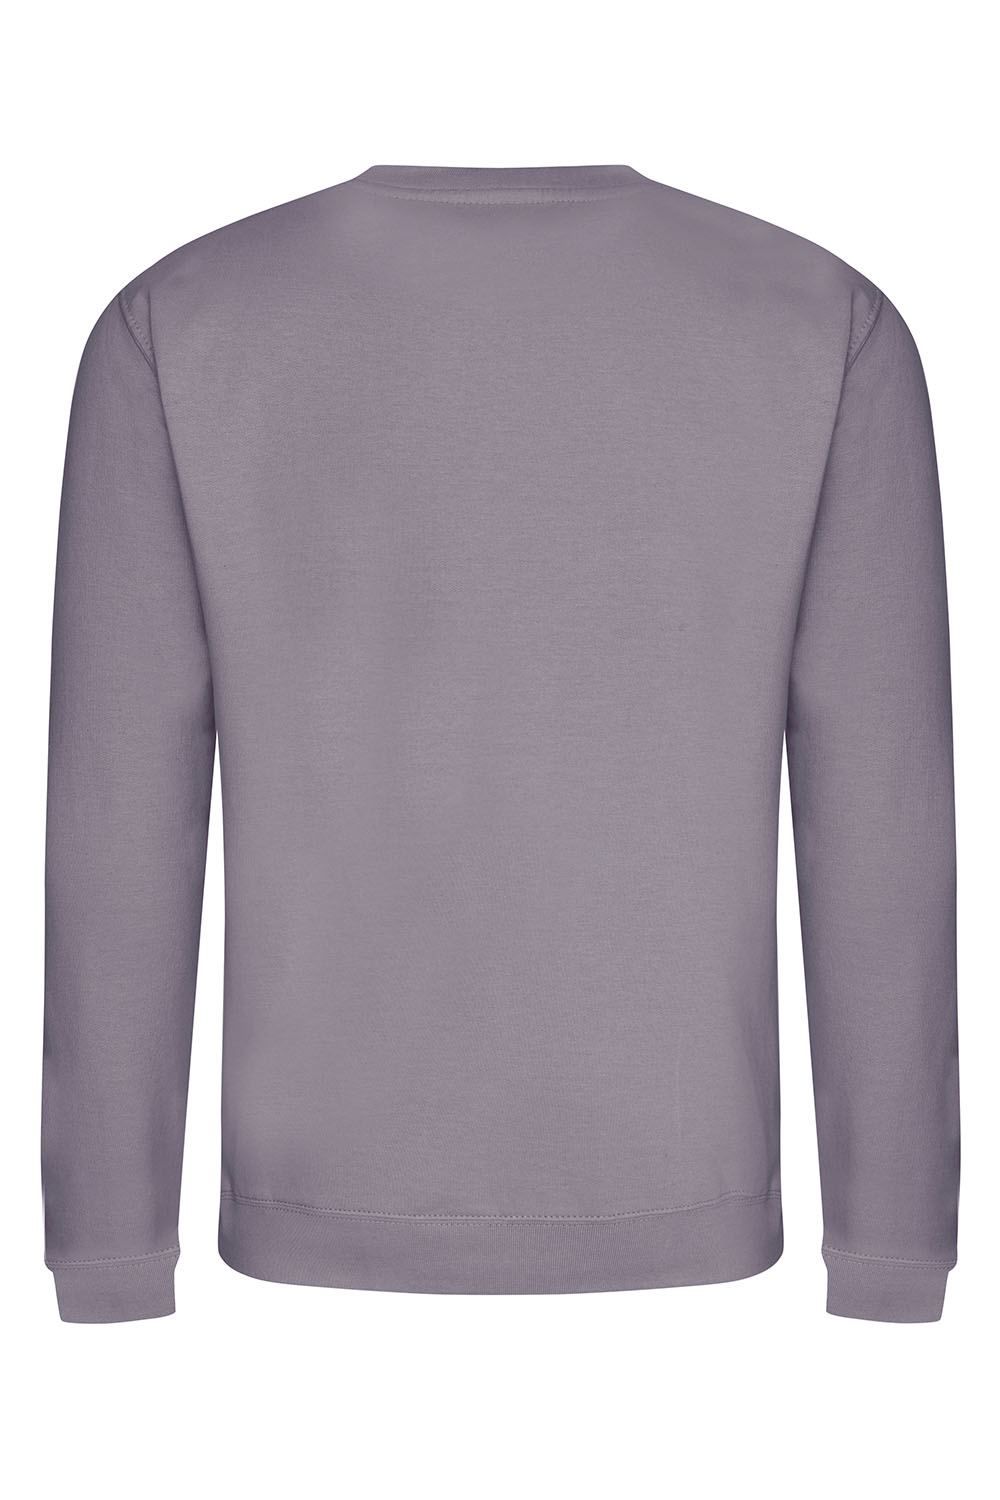 Plain Sweatshirt In Dusty Lilac (Single).